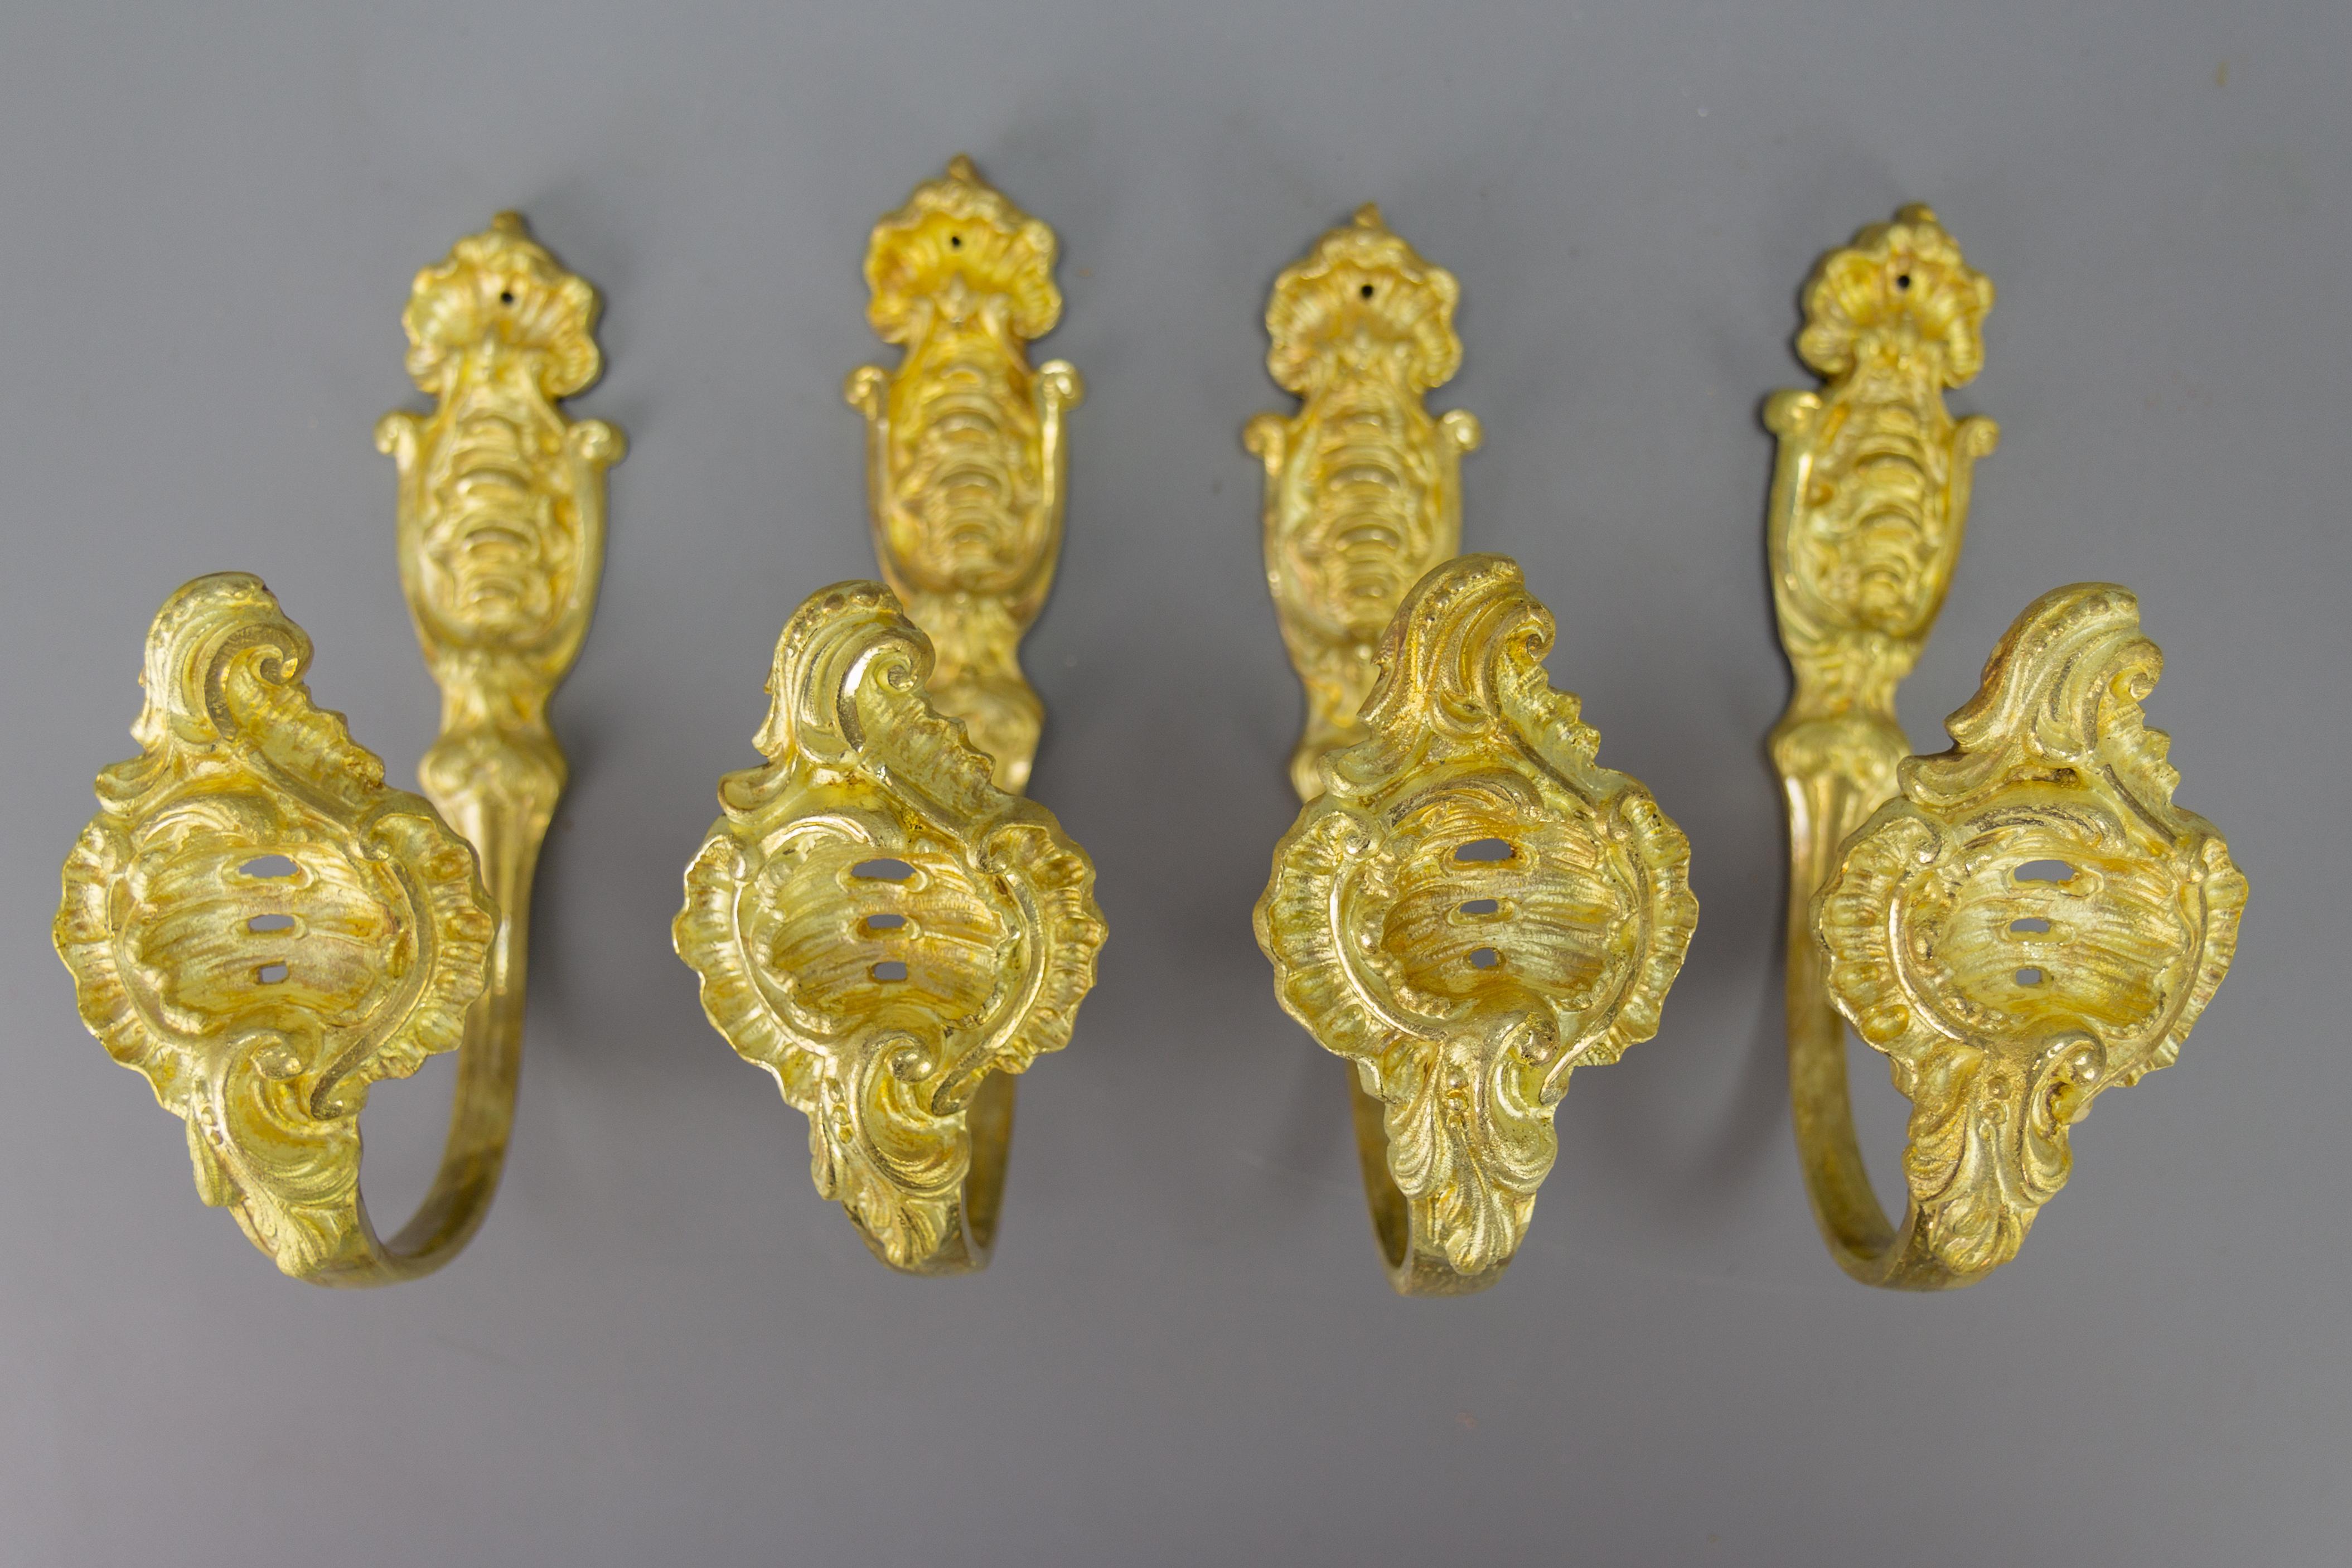 Ensemble de quatre embrasses ou supports de rideaux anciens en bronze doré de style rococo français.
Magnifique et impressionnant ensemble de quatre supports de rideaux, ou embrasses, en bronze doré, de style Rococo ou Louis XV. Ces splendides